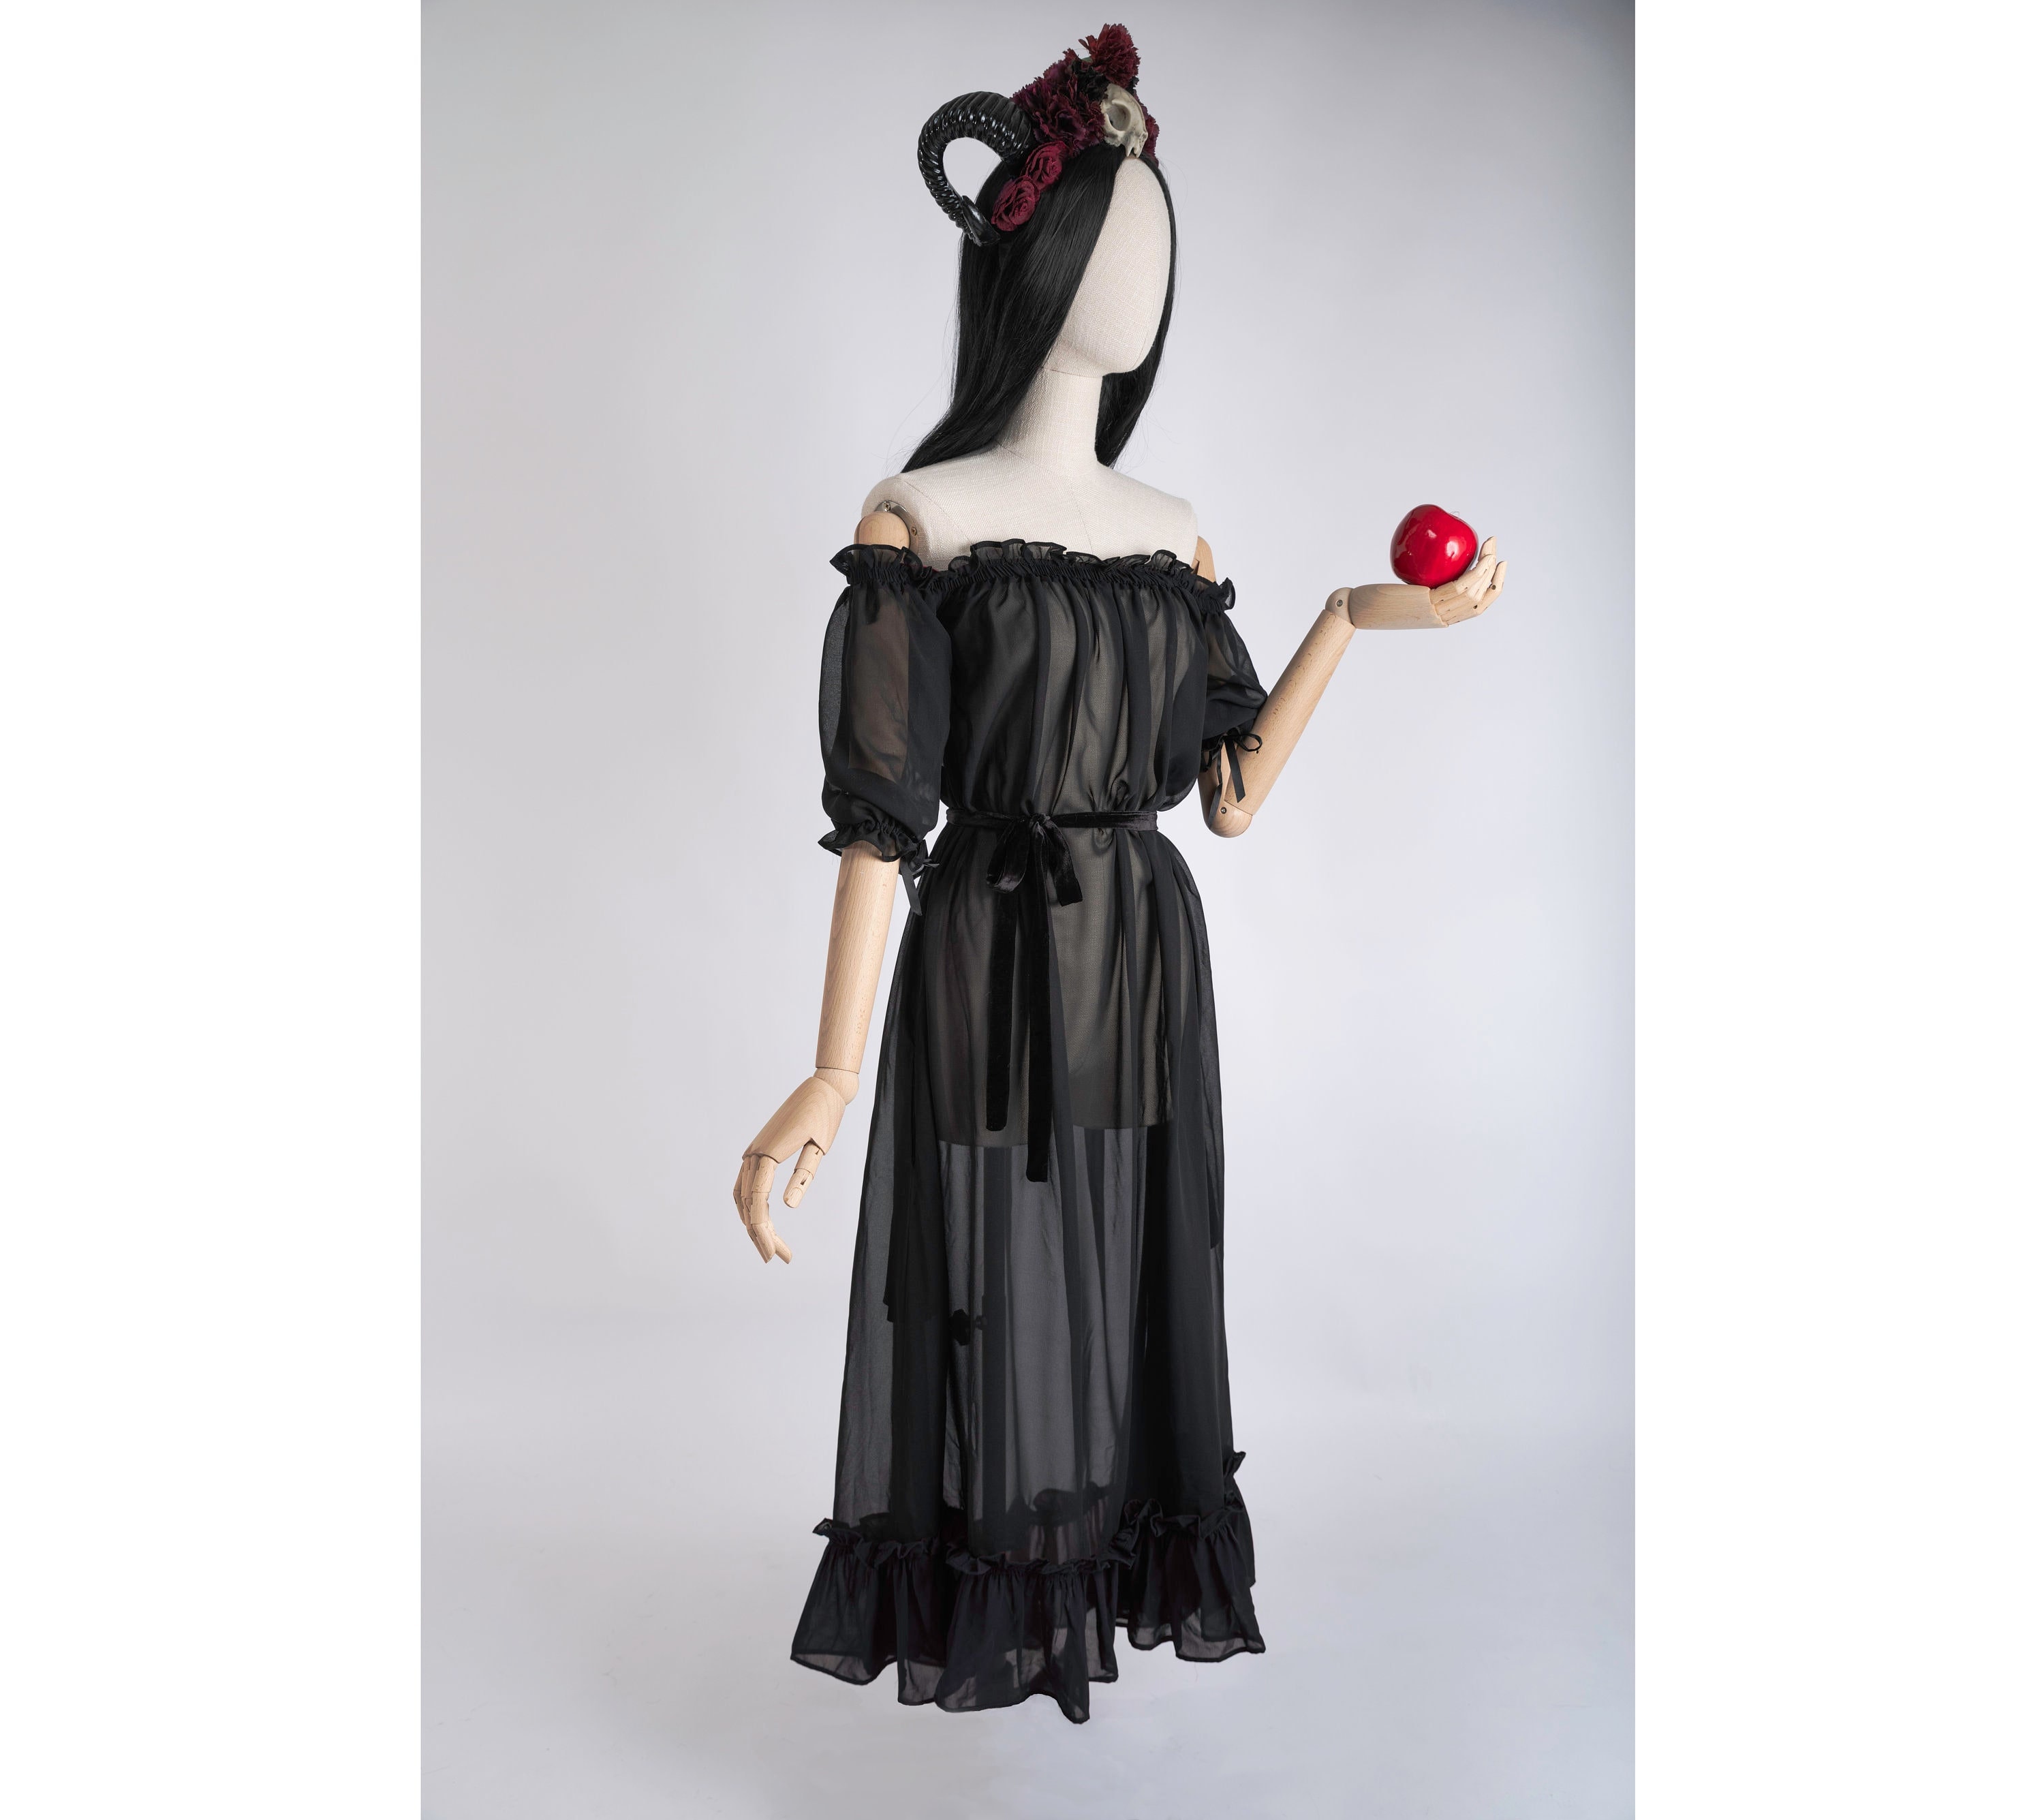 Vestido medieval de reina para mujer, vestido de fiesta de manga corta,  vestido de fiesta de regencia, disfraz de vampiro renacentista de la realeza